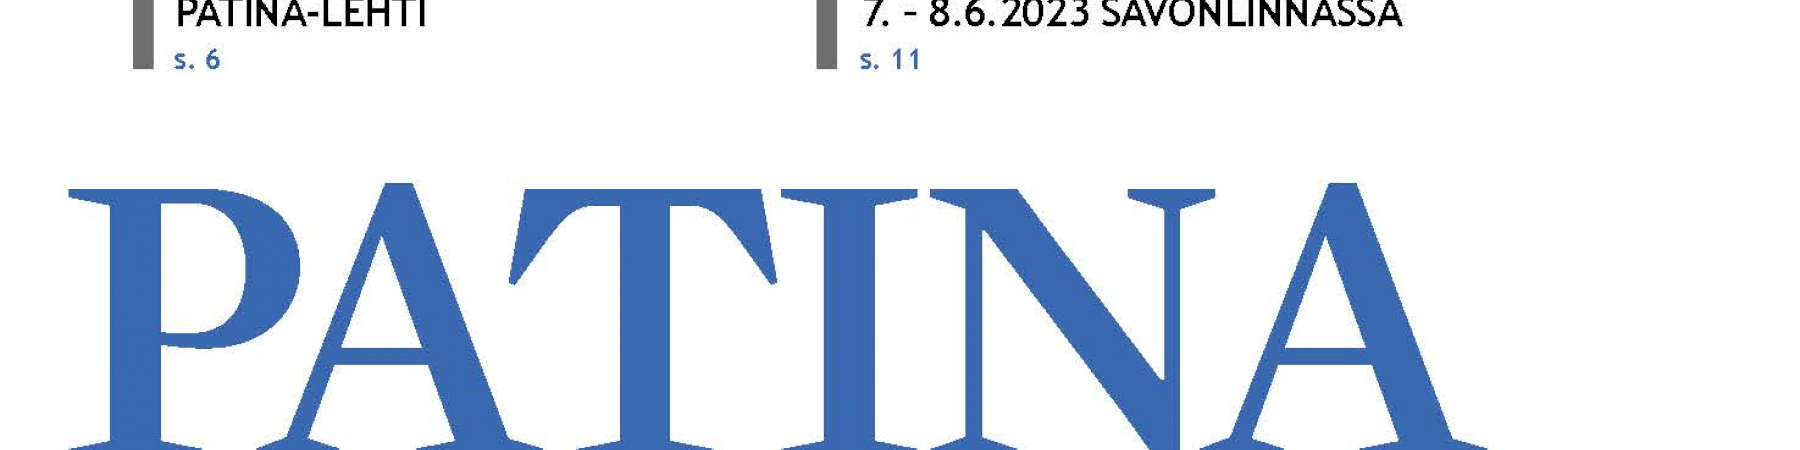 Lue vuoden 2022 viimeinen Patina -lehti nyt verkosta!